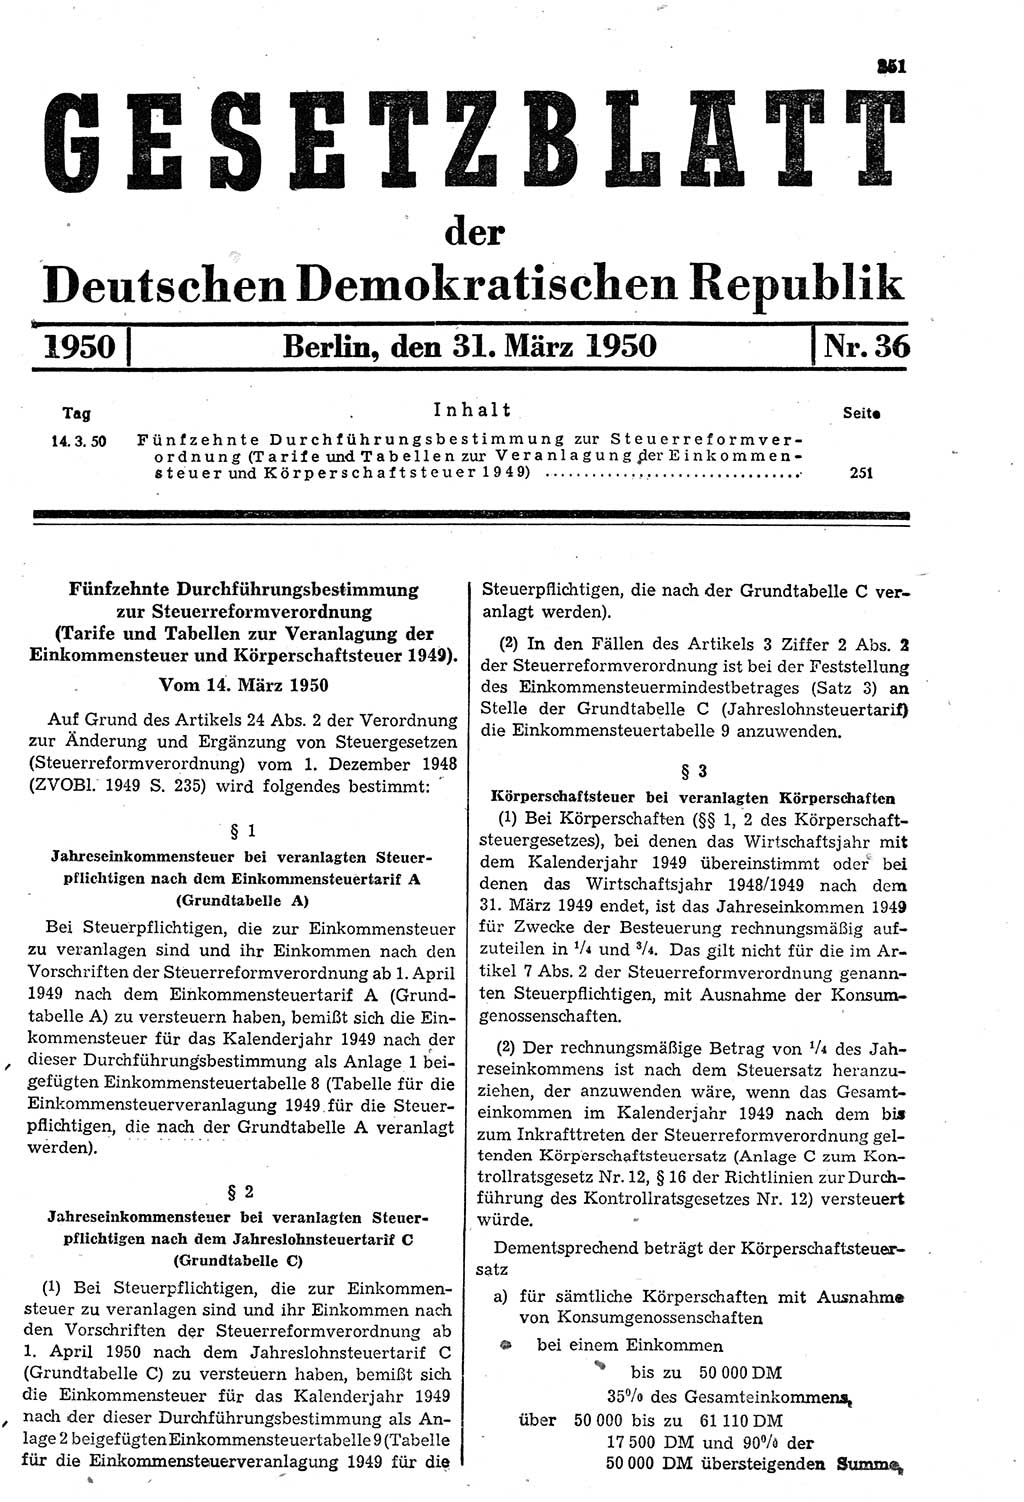 Gesetzblatt (GBl.) der Deutschen Demokratischen Republik (DDR) 1950, Seite 251 (GBl. DDR 1950, S. 251)